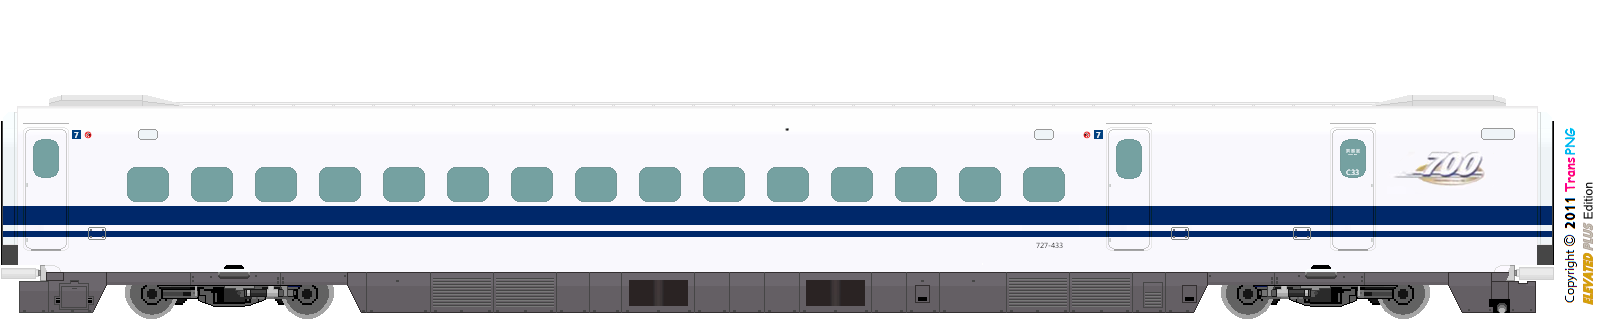 [9010] Central Japan Railway 52287586083_e1ab99bb44_o